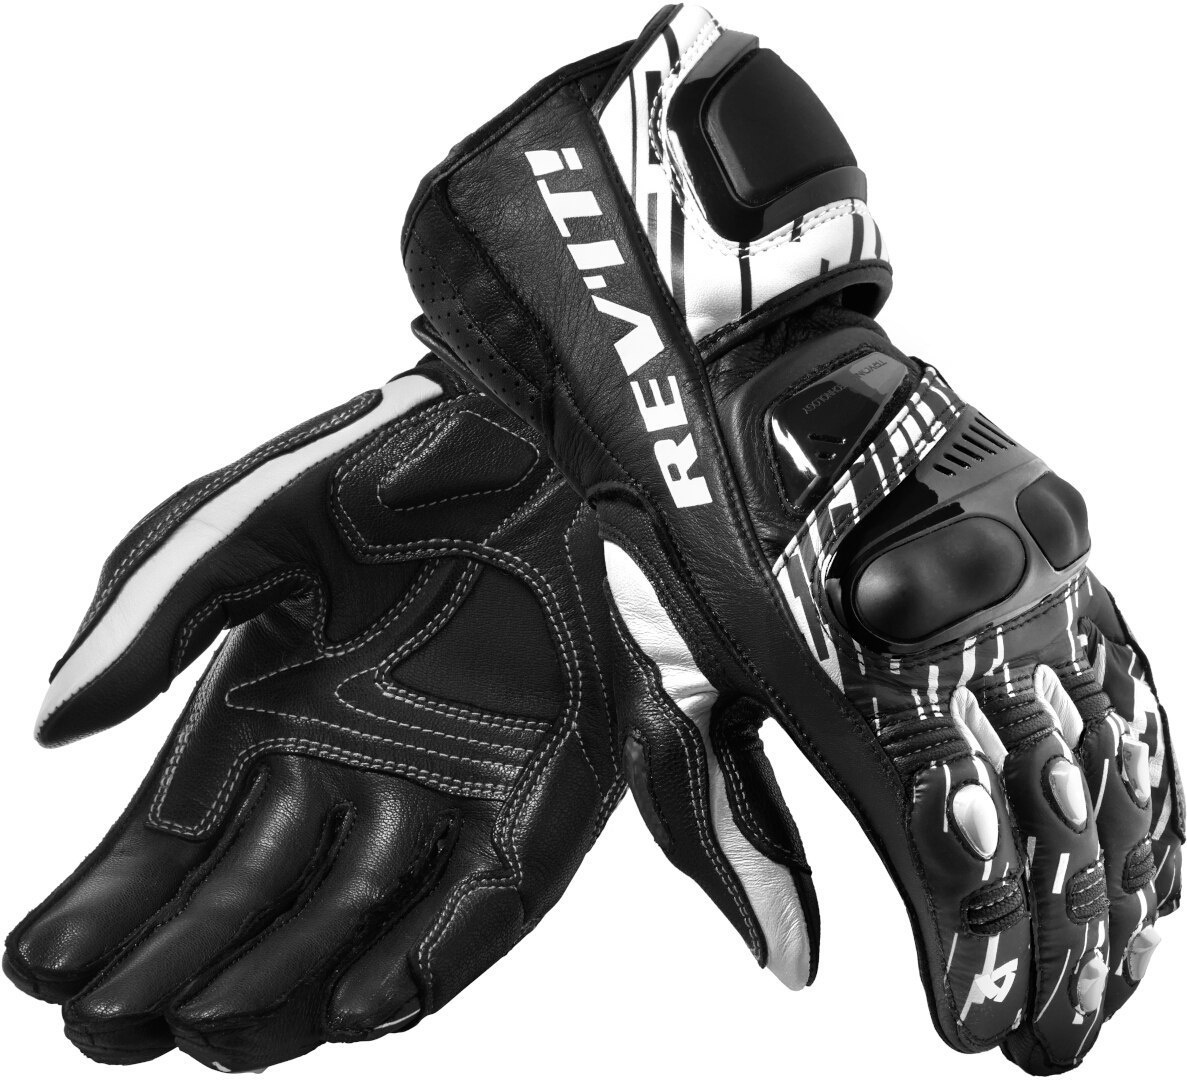 Revit Quantum 2 De Handschoenen van de motorfiets, zwart-wit, XL